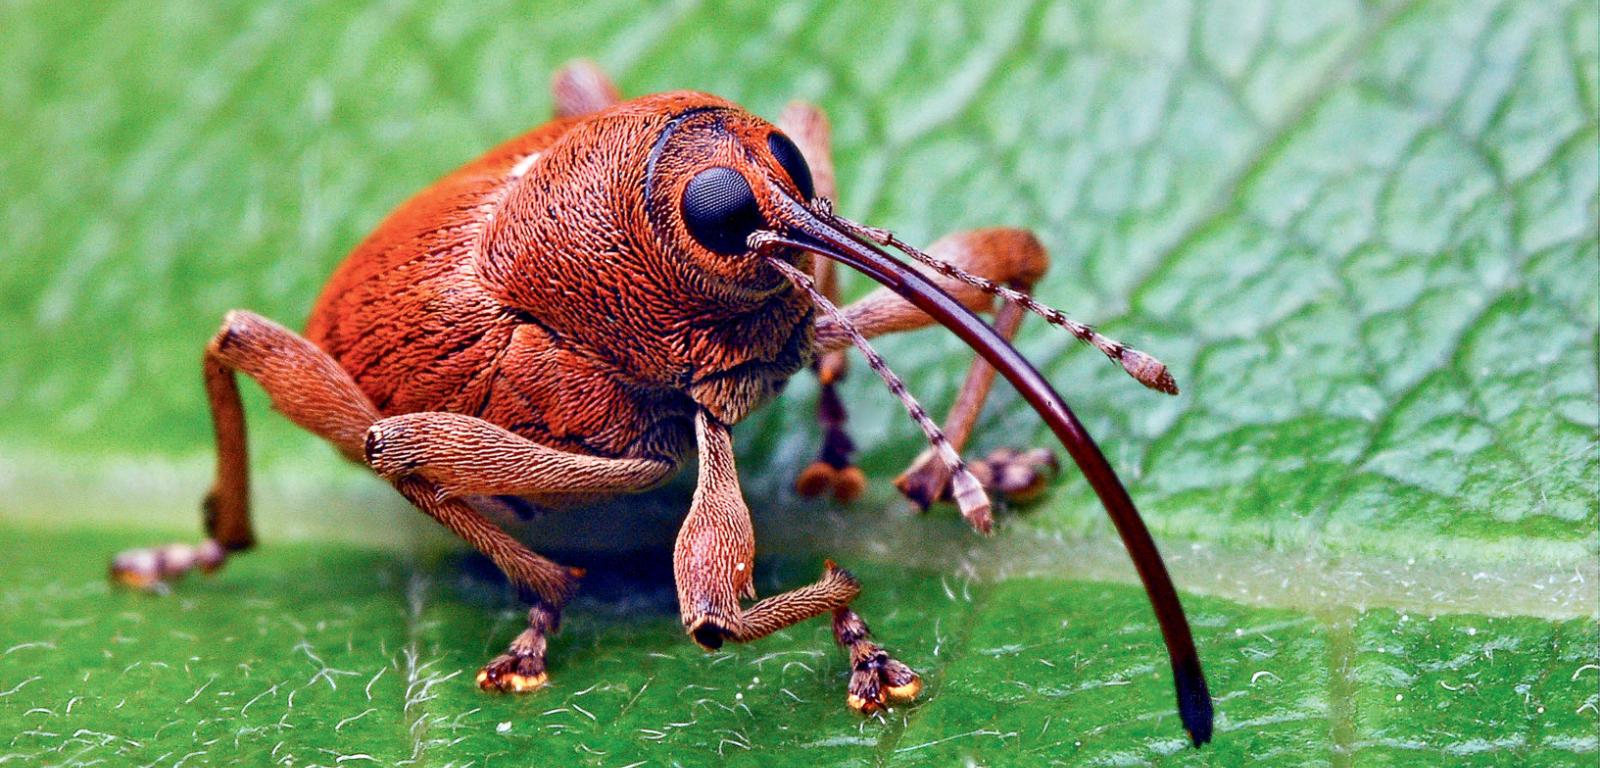 Wiosną, po niemal dwóch latach spędzonych w stadium larwalnym – najpierw w żołędziu, potem przez dwie zimy w glebie – wychodzą na świat dorosłe chrząszcze. Są nieskazitelnej urody. Można je spotkać na różnych roślinach, zwykle w pobliżu dębów.